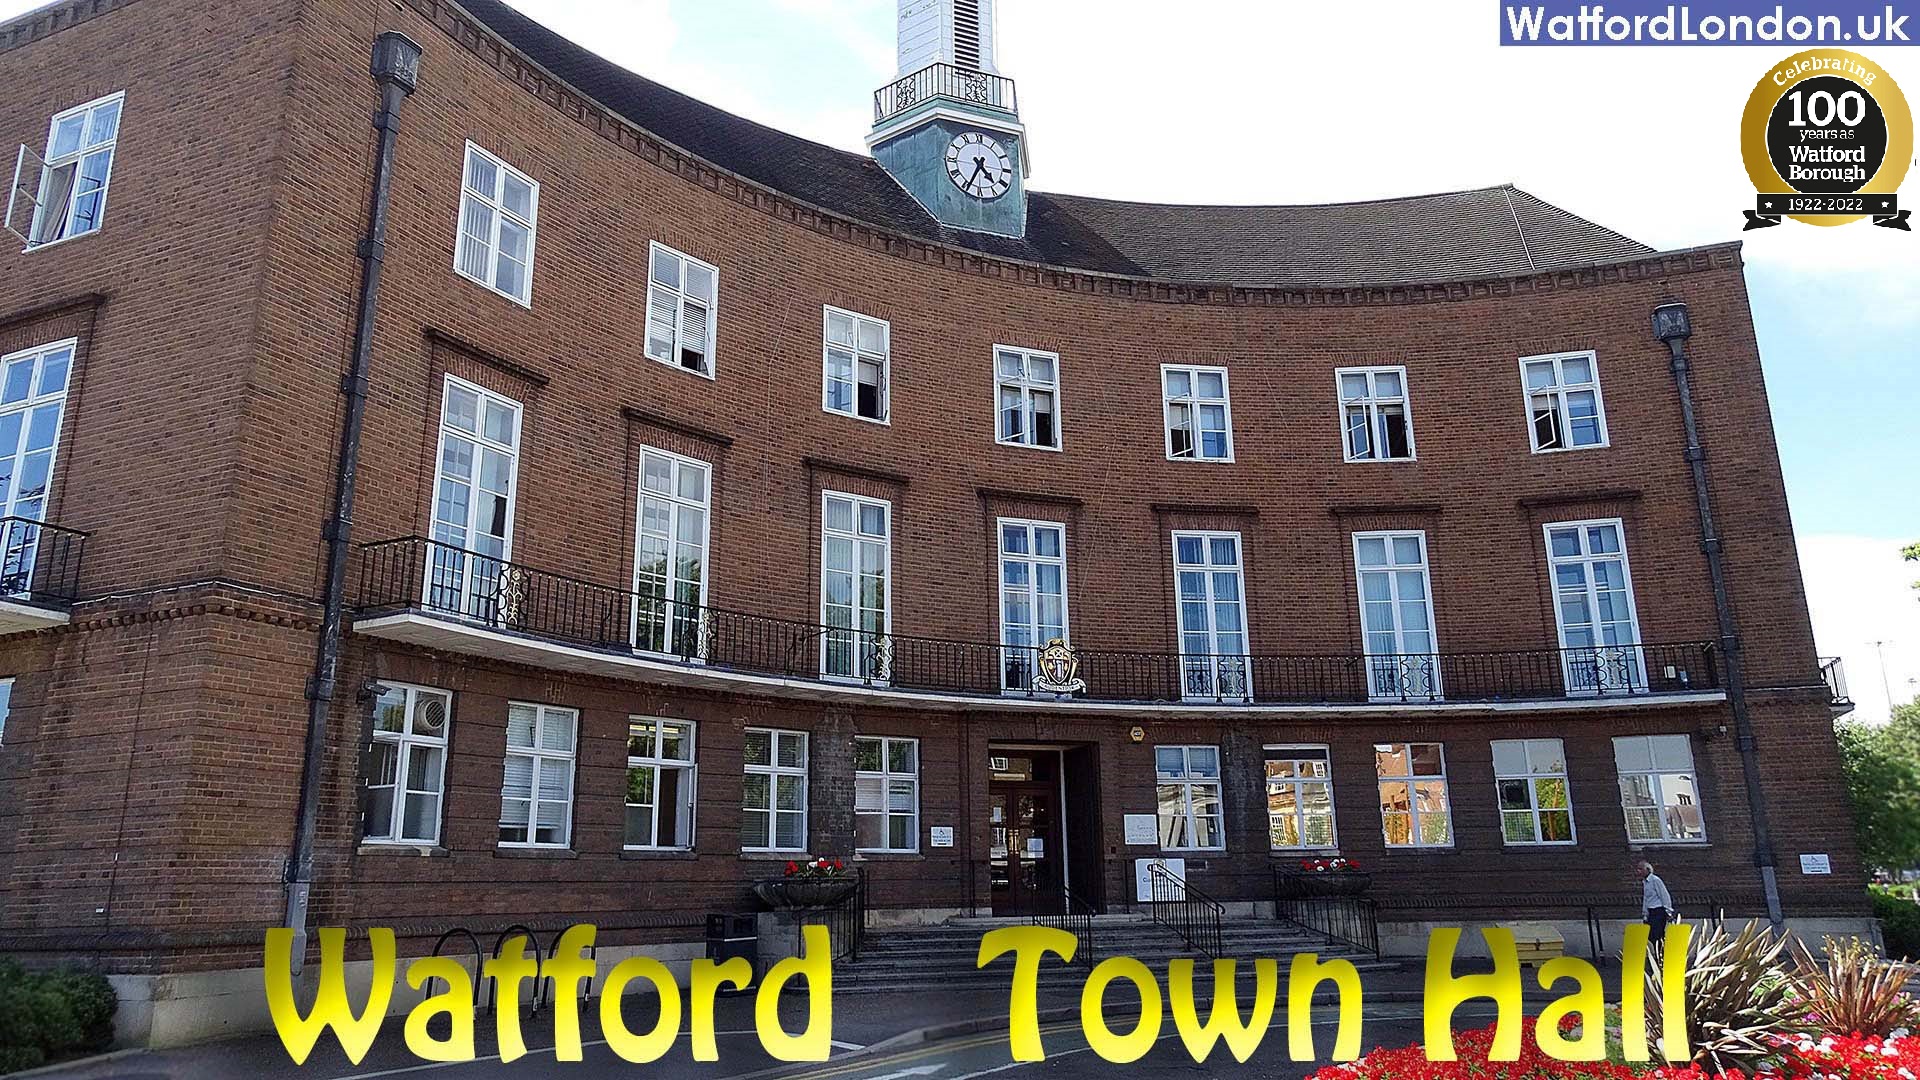 Watford Town Hall, Watford council